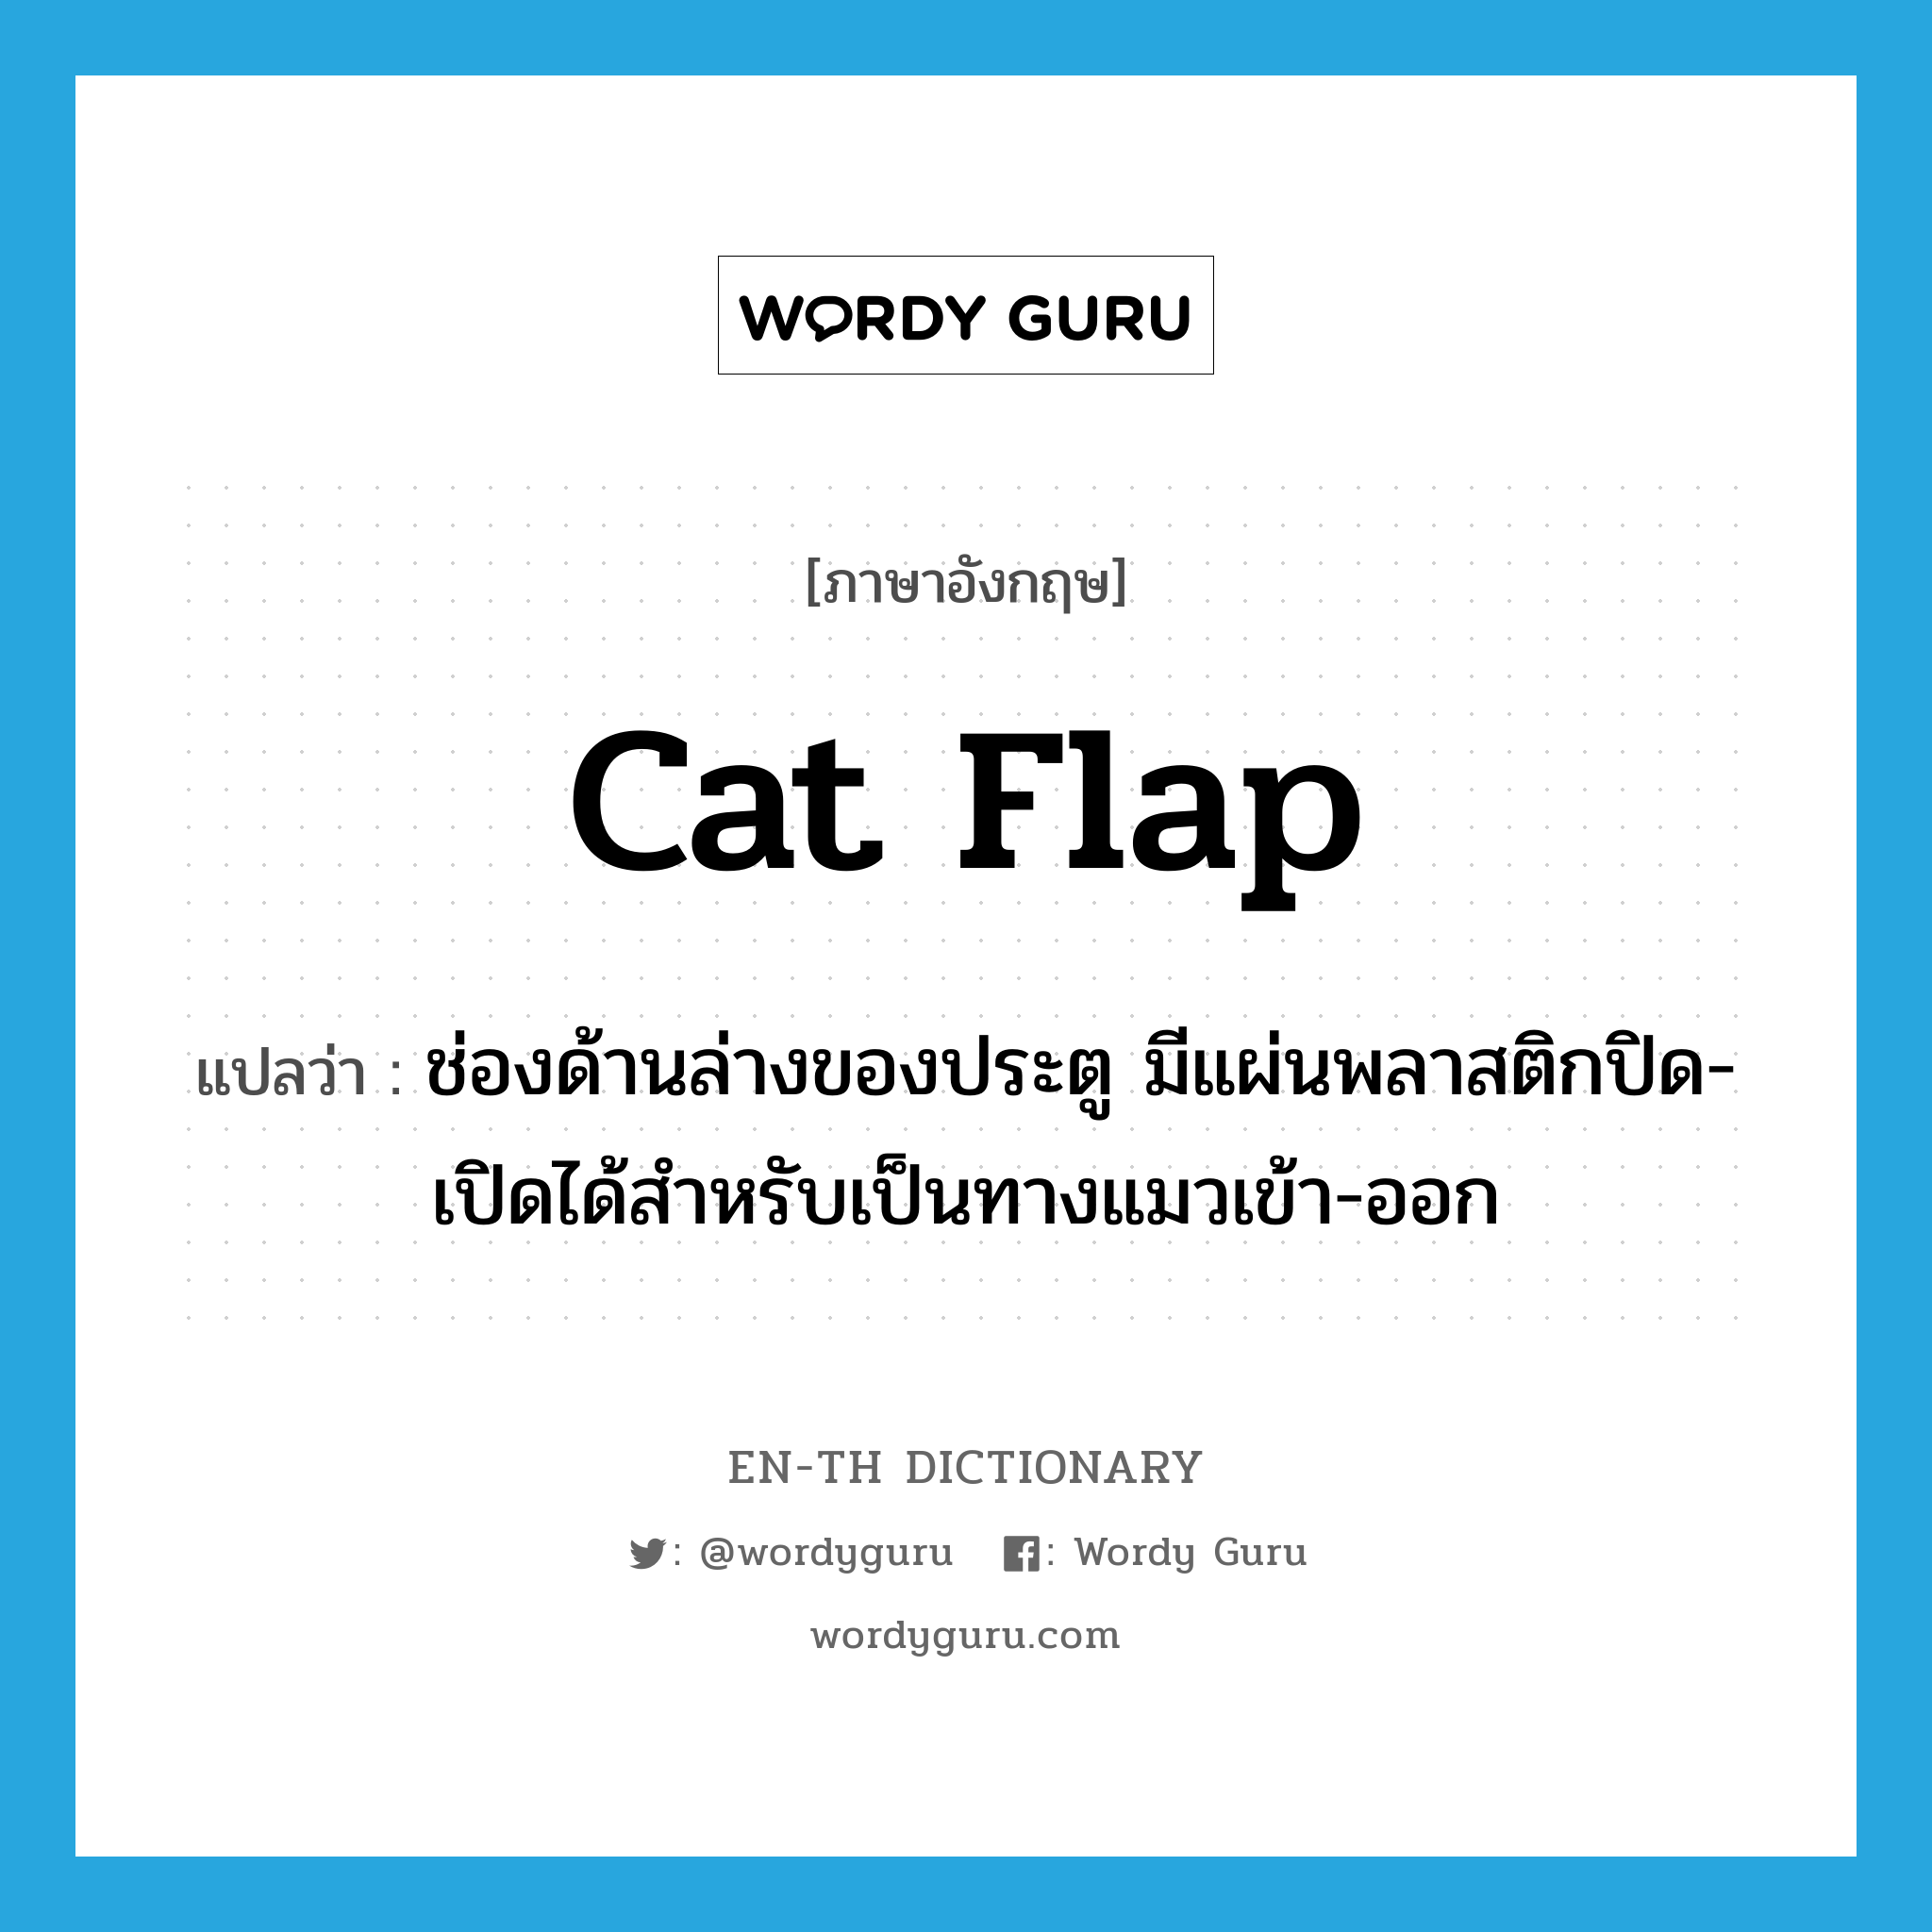 cat flap แปลว่า?, คำศัพท์ภาษาอังกฤษ cat flap แปลว่า ช่องด้านล่างของประตู มีแผ่นพลาสติกปิด-เปิดได้สำหรับเป็นทางแมวเข้า-ออก ประเภท N หมวด N